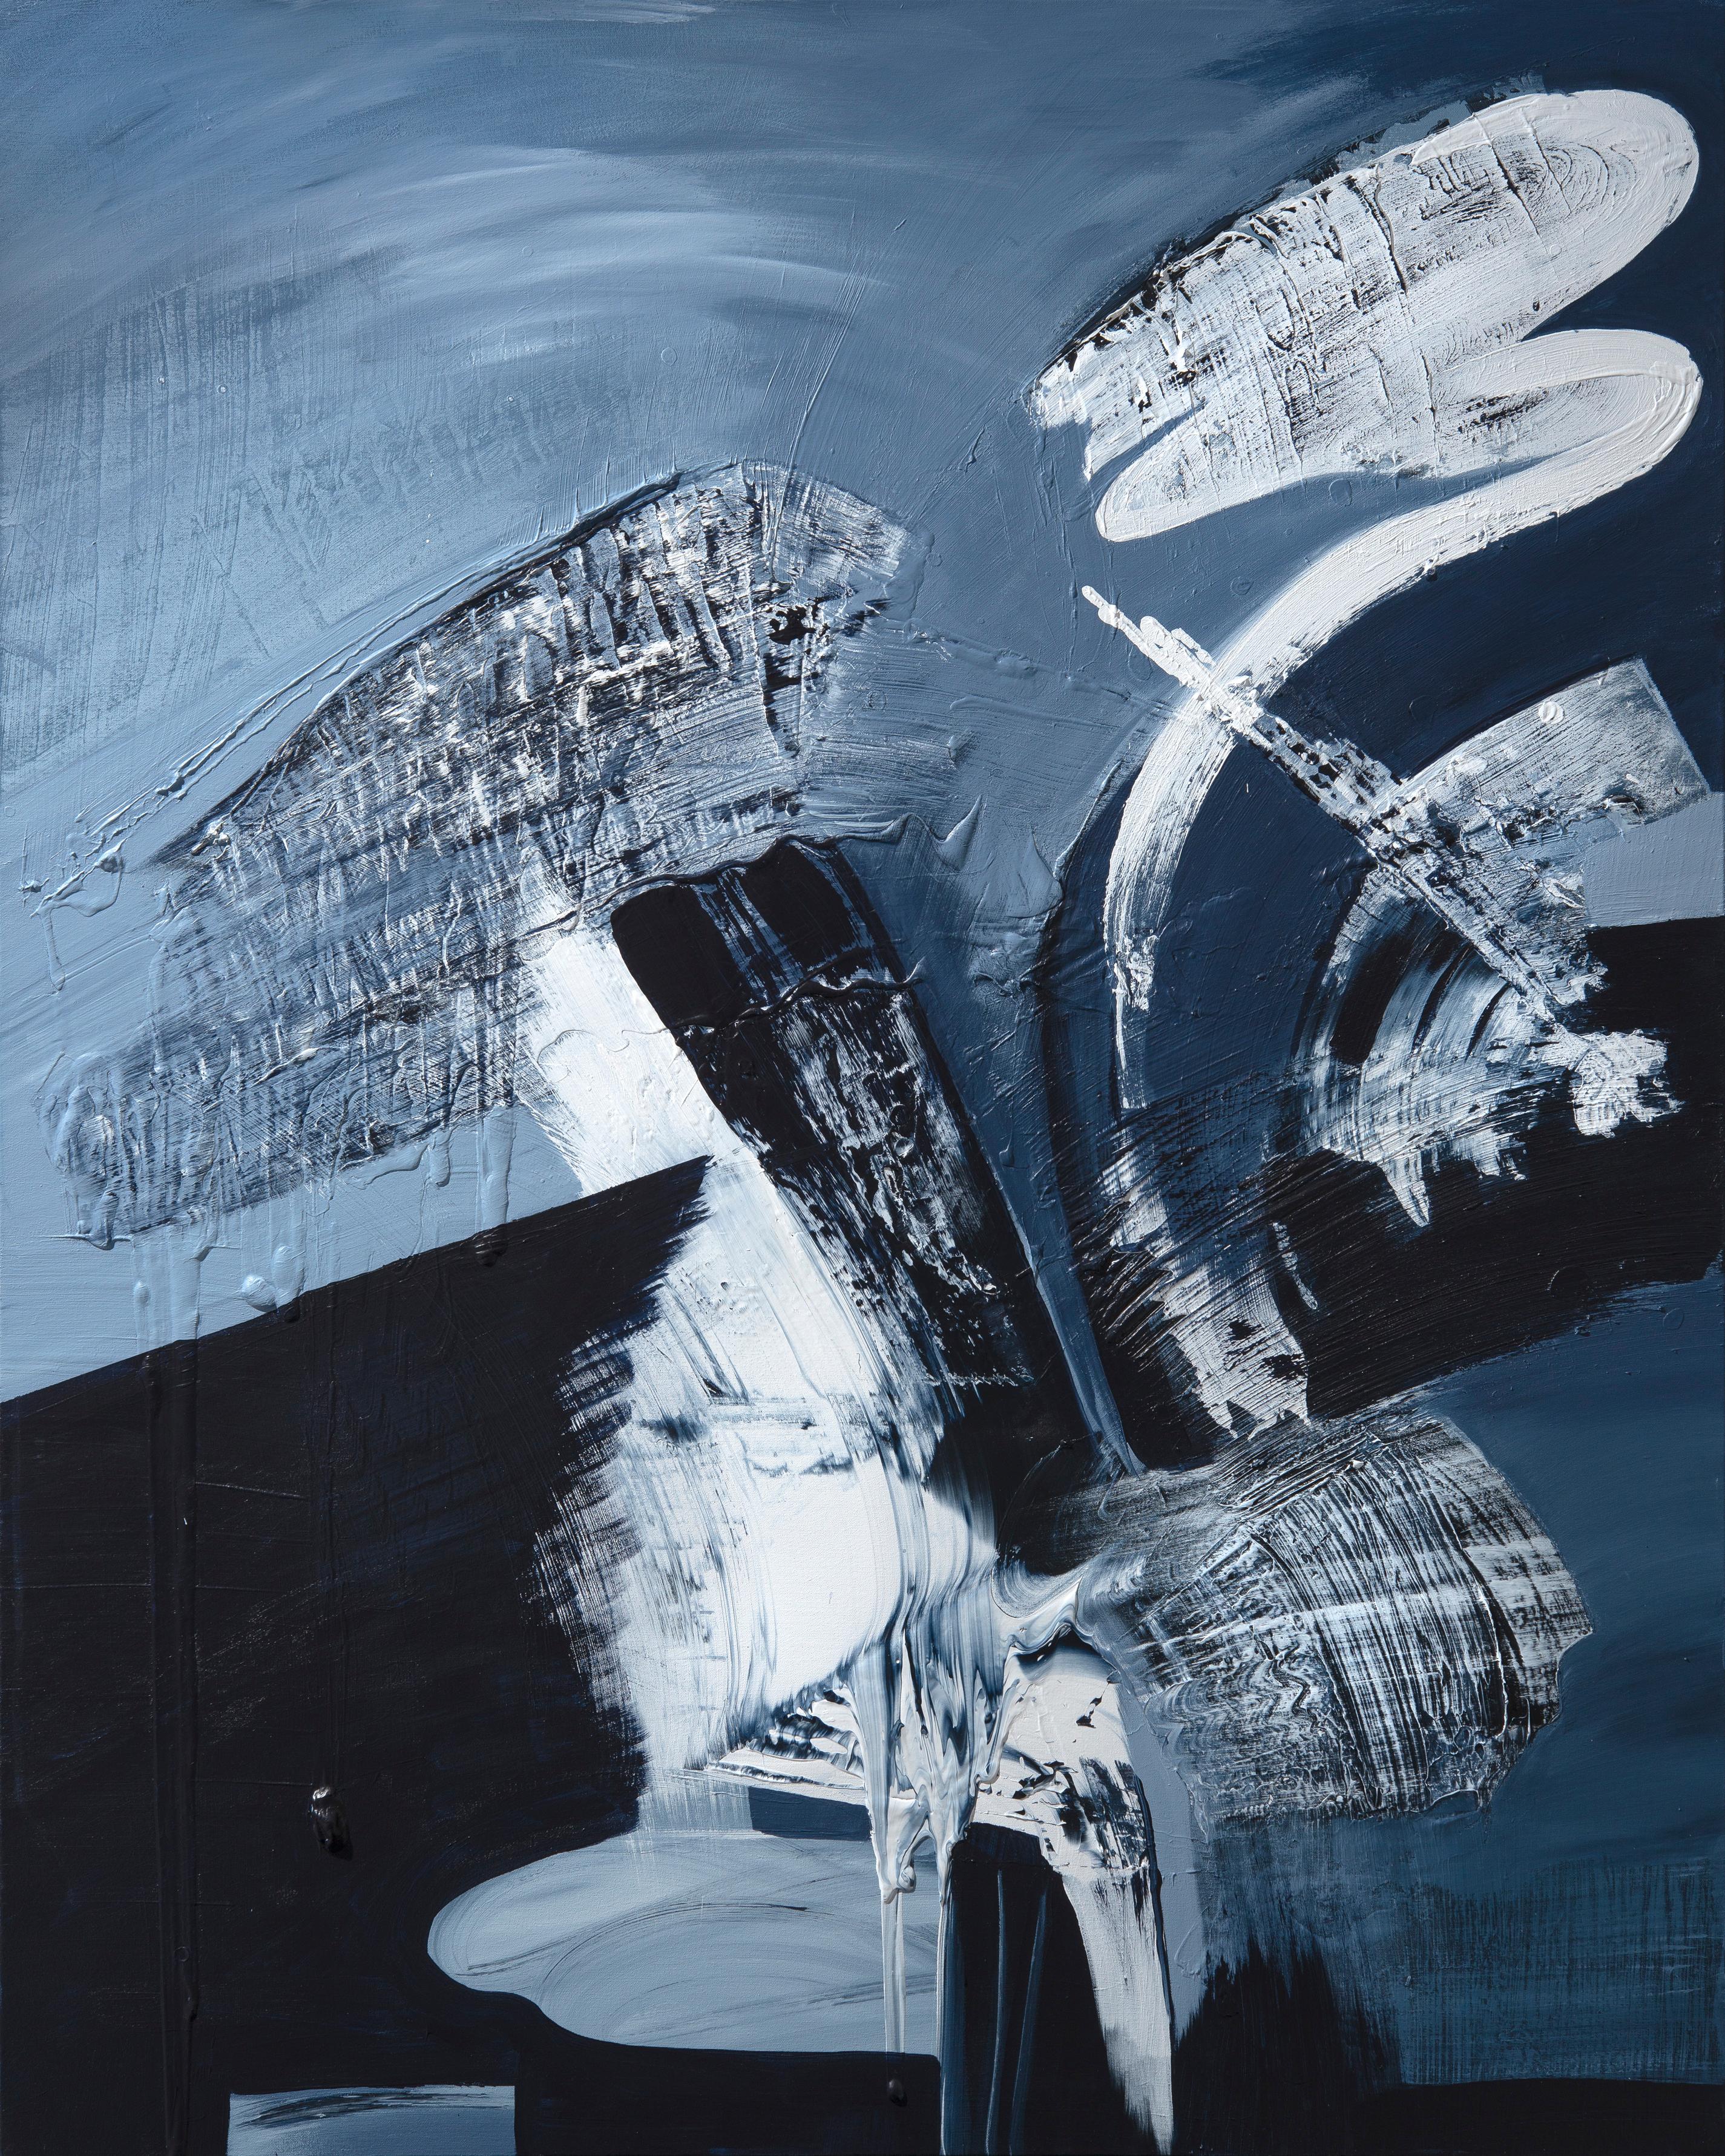 Abstract Painting Gail Titus - Destiny - Grande peinture texturée originale d'abstraction gestuelle en noir et blanc